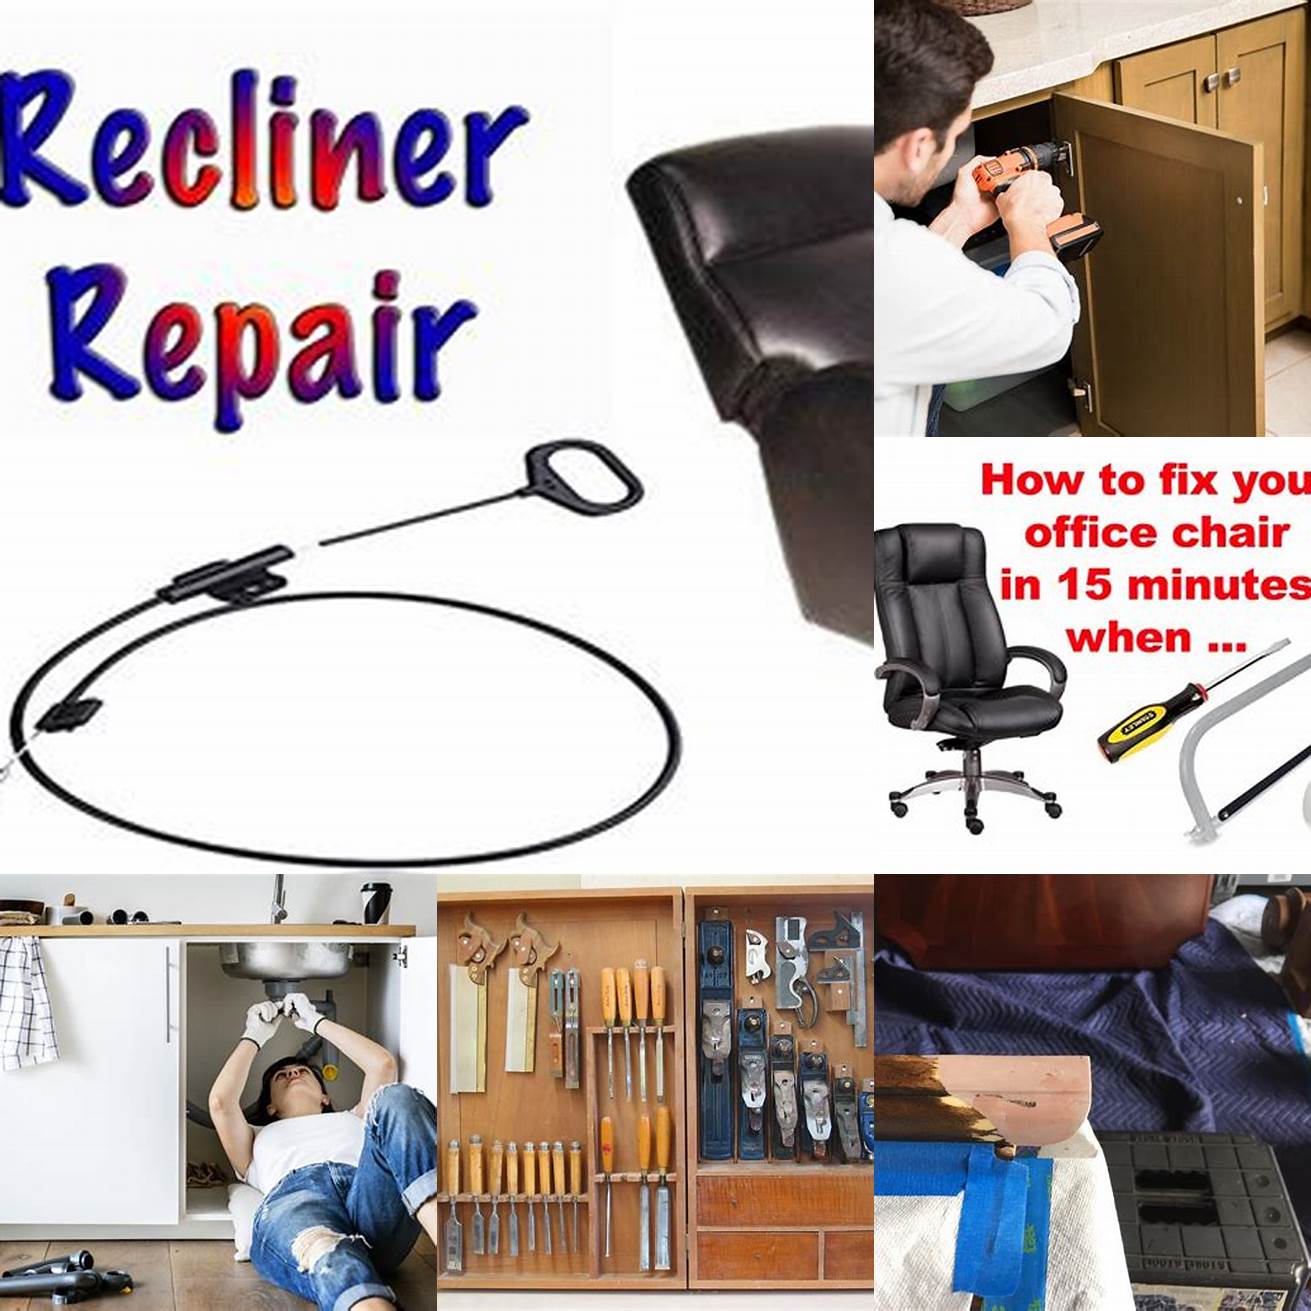 Perform repairs as needed